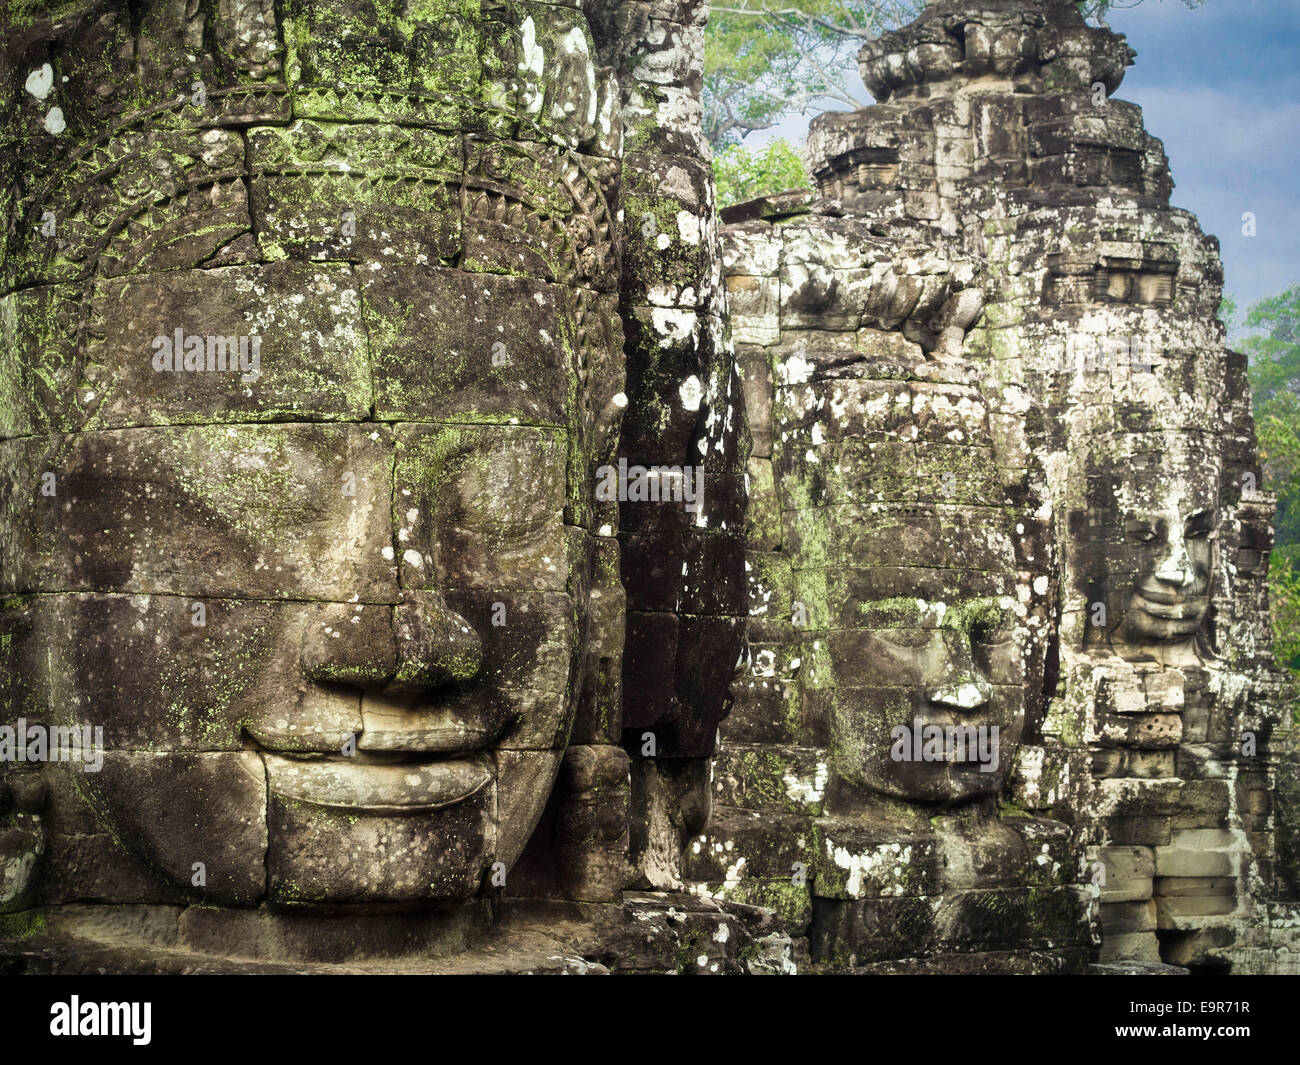 Giant stone faces at ancient Bayon Temple at Angkor, Siem Reap, Cambodia. Stock Photo